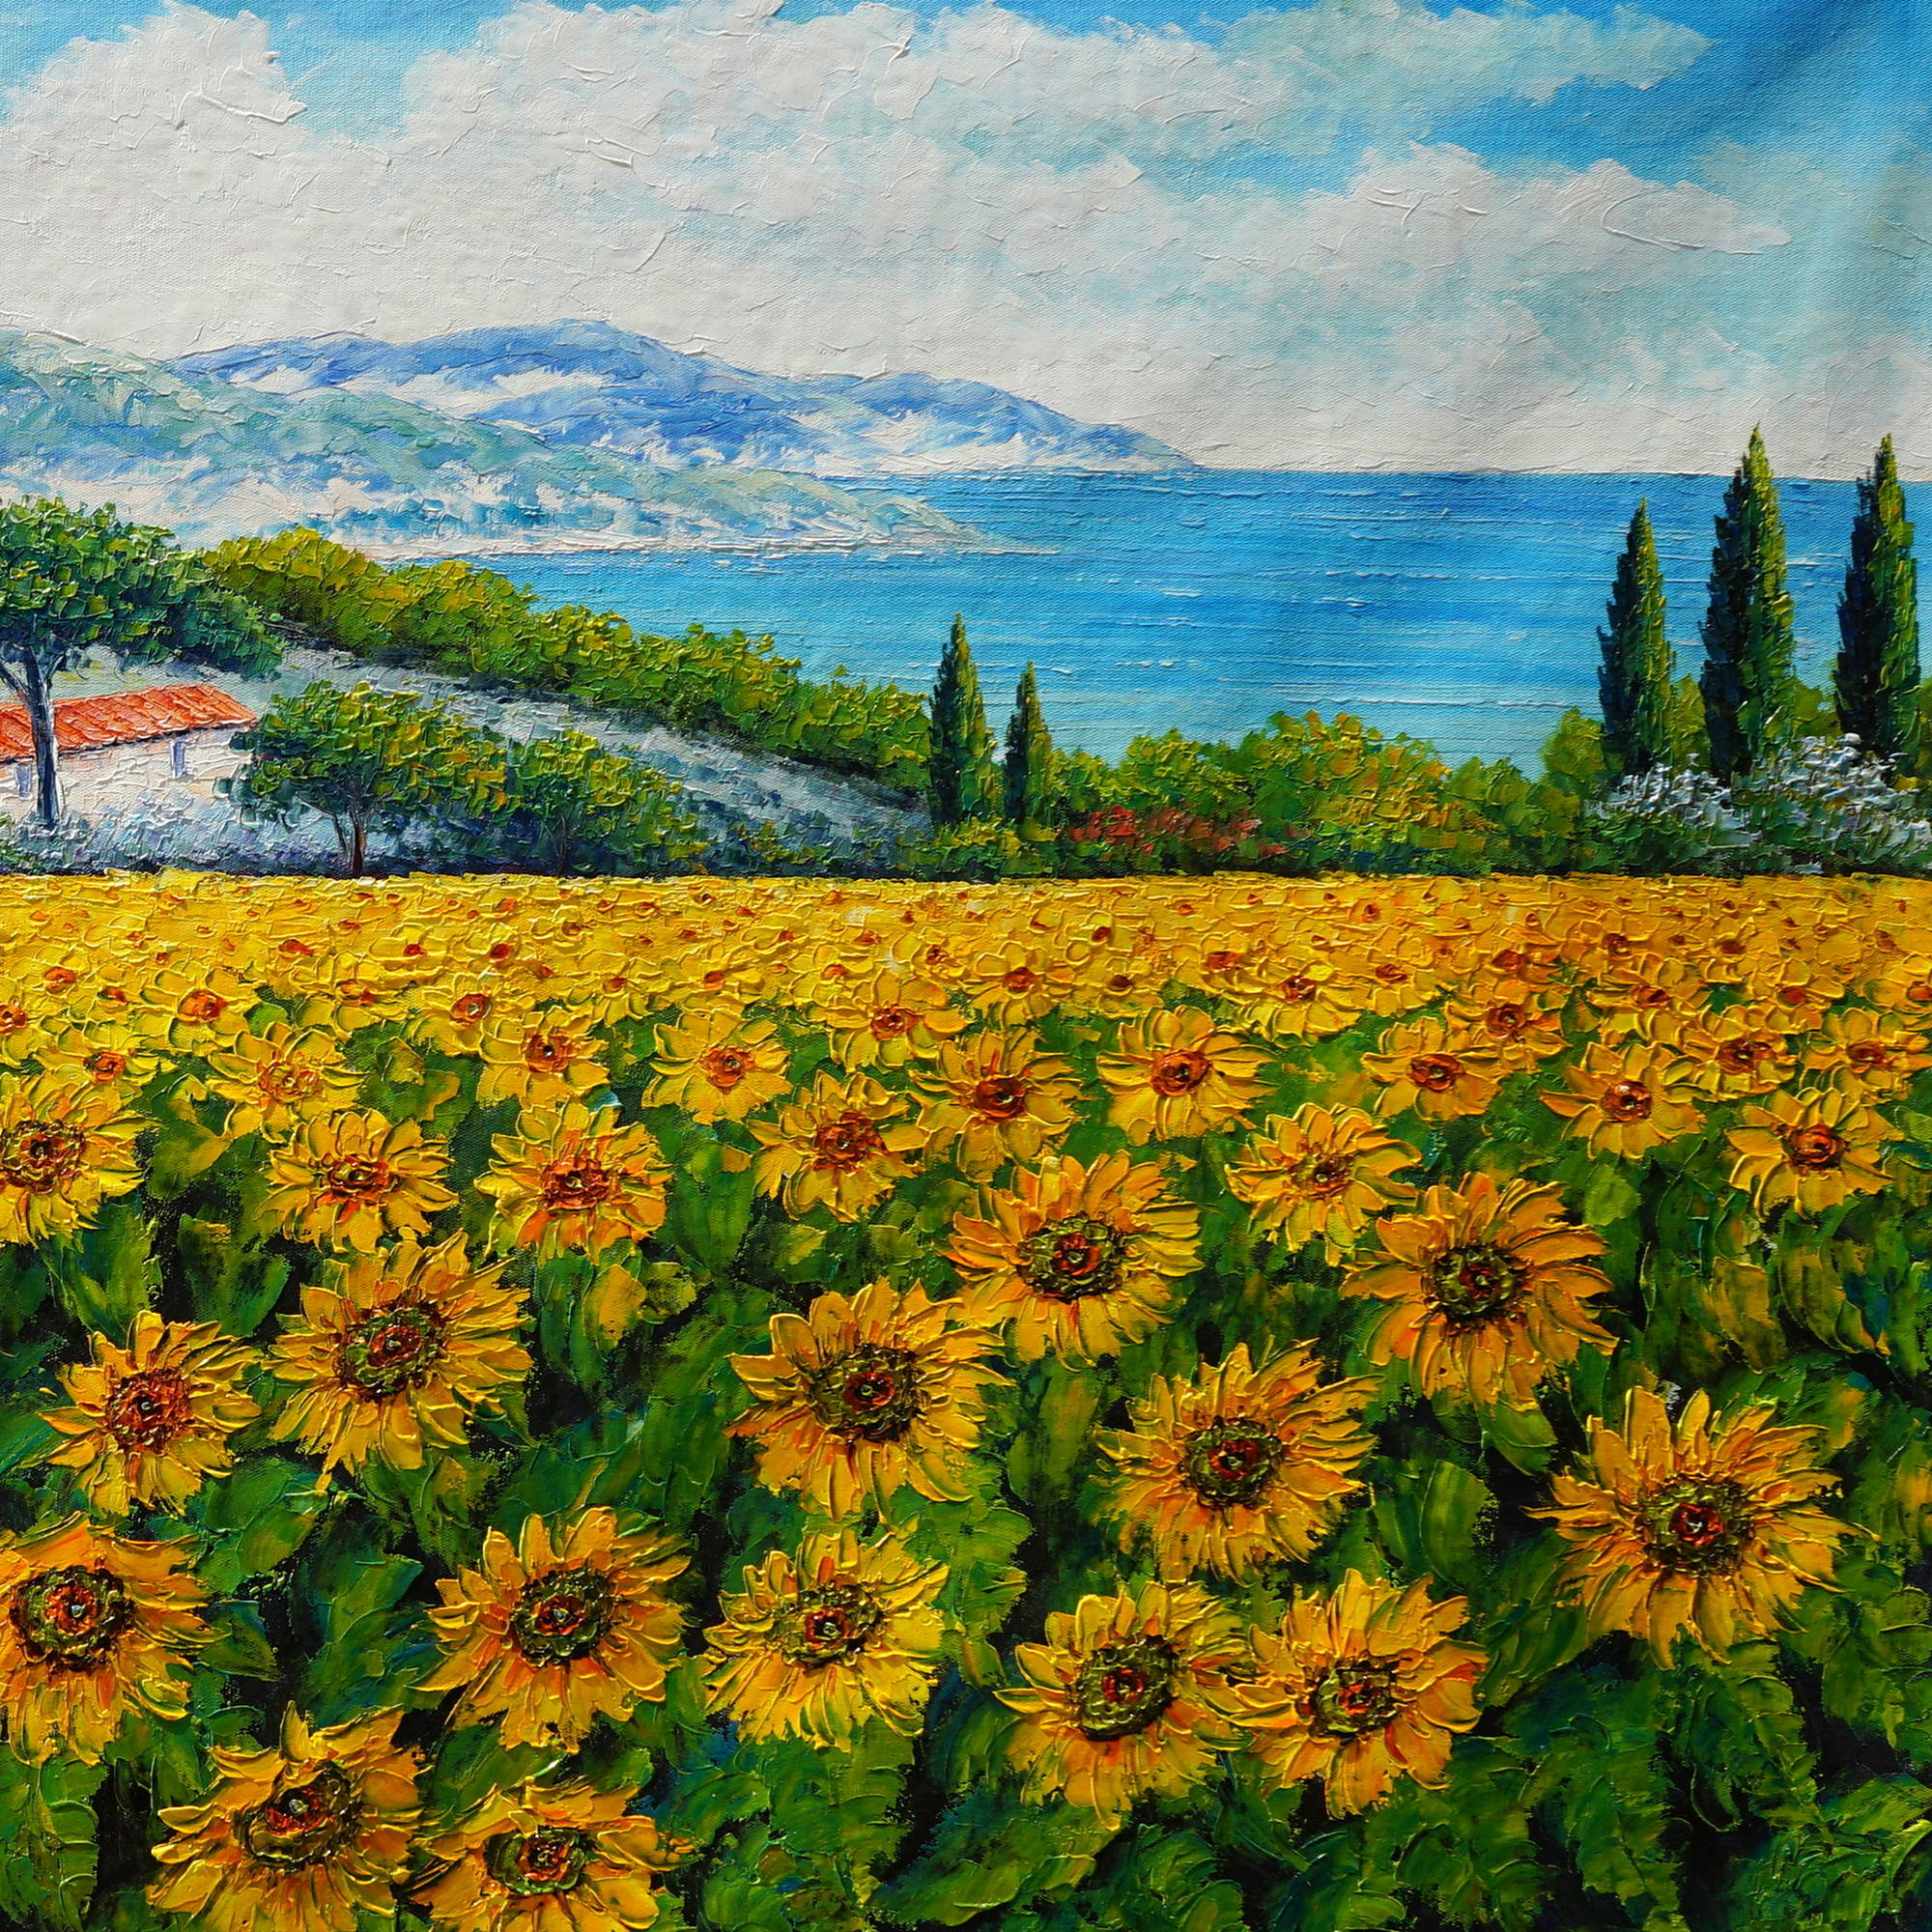 Champs de tournesol et paysage marin peints à la main 90x180cm